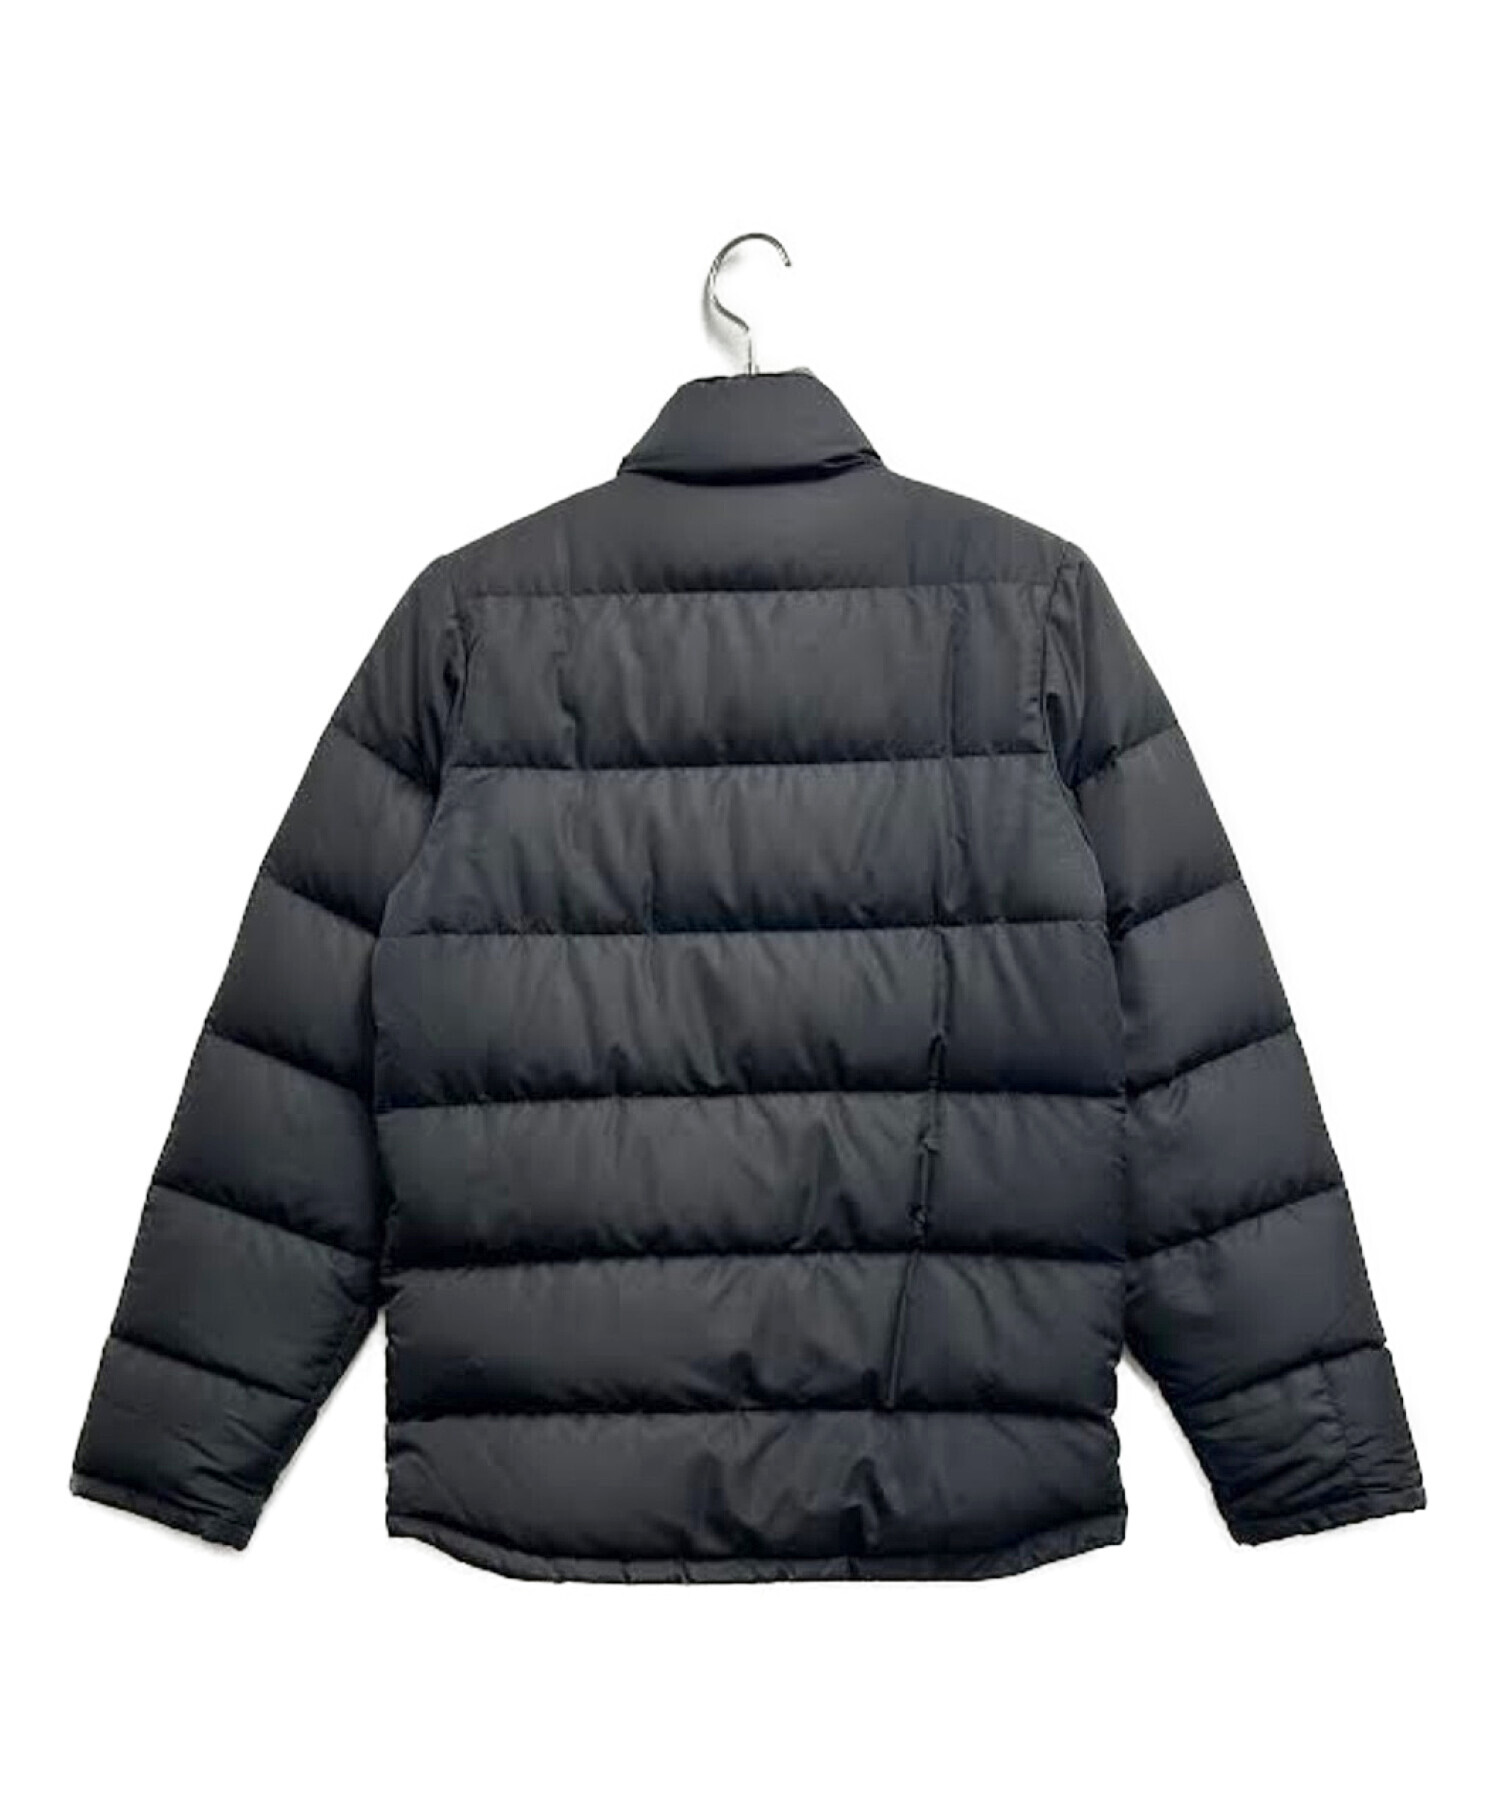 Patagonia (パタゴニア) スリングショットダウンジャケット ブラック サイズ:XS